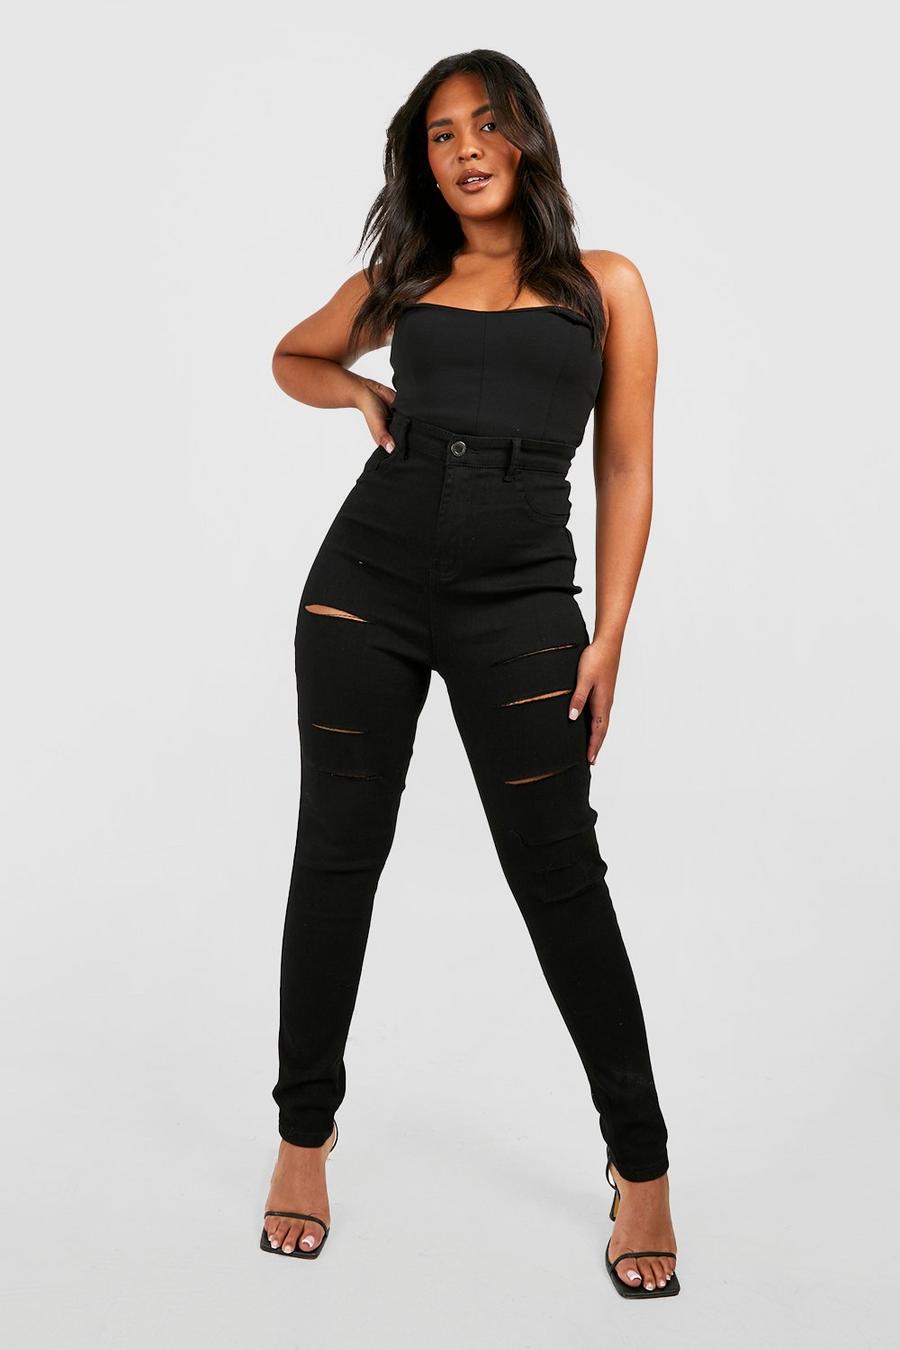 שחור negro טייץ ג'ינס עם קרע אלכסוני מידות גדולות